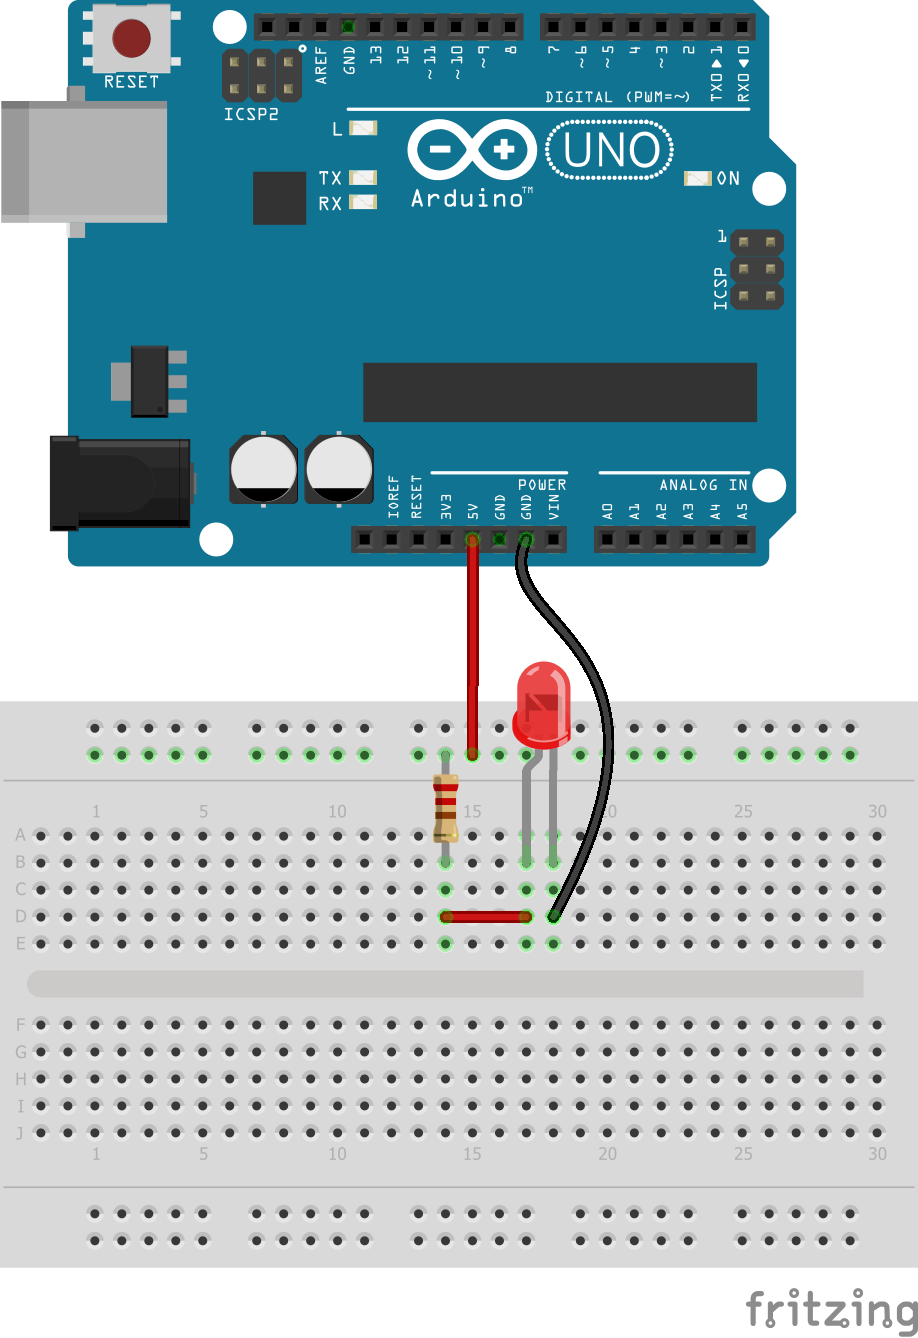 Montaje en protoboard de placa Arduino con un led conectado a la alimentación